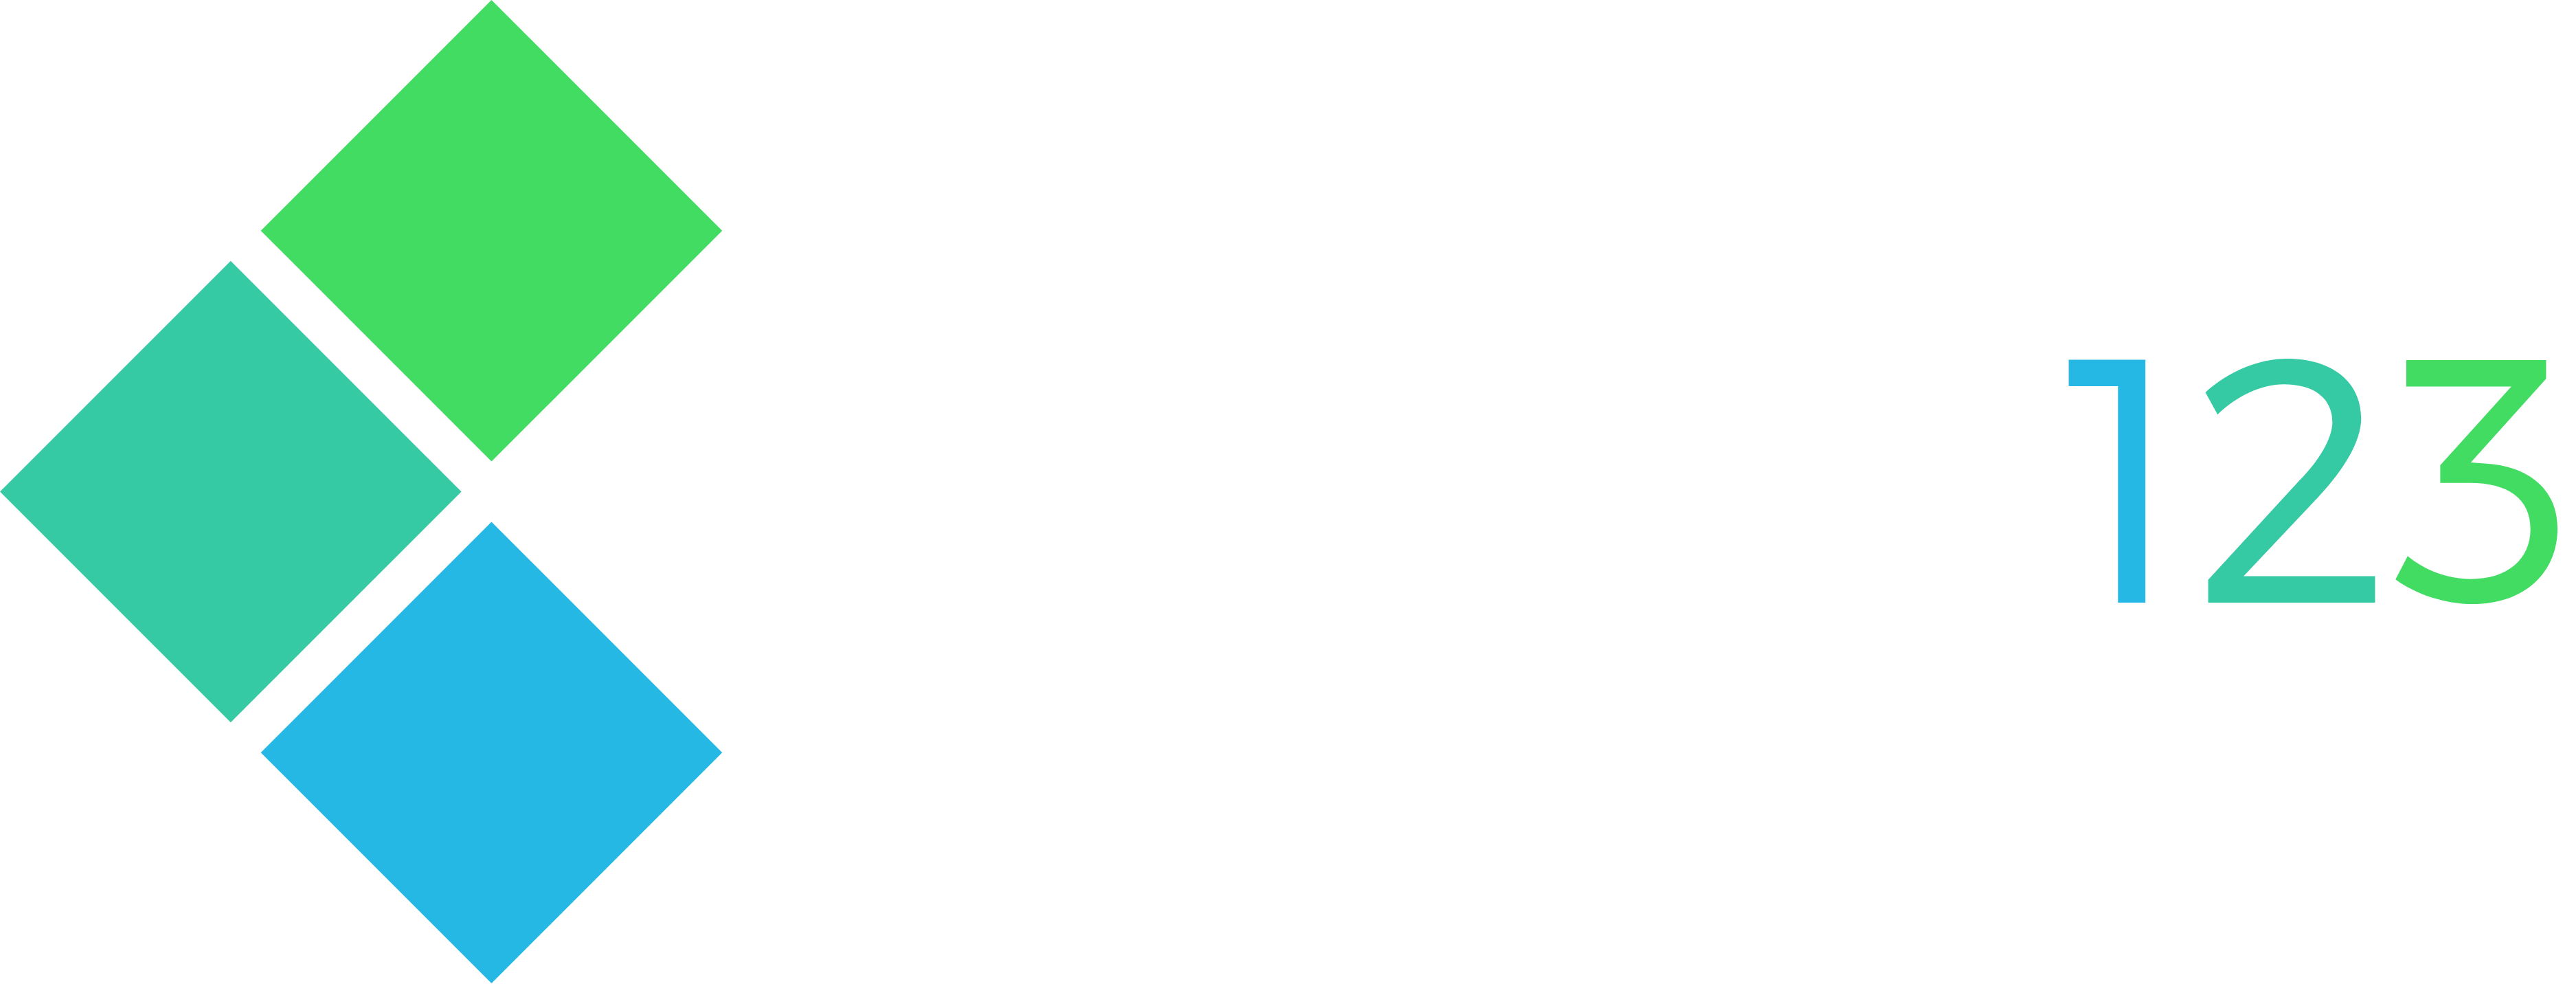 Strony123